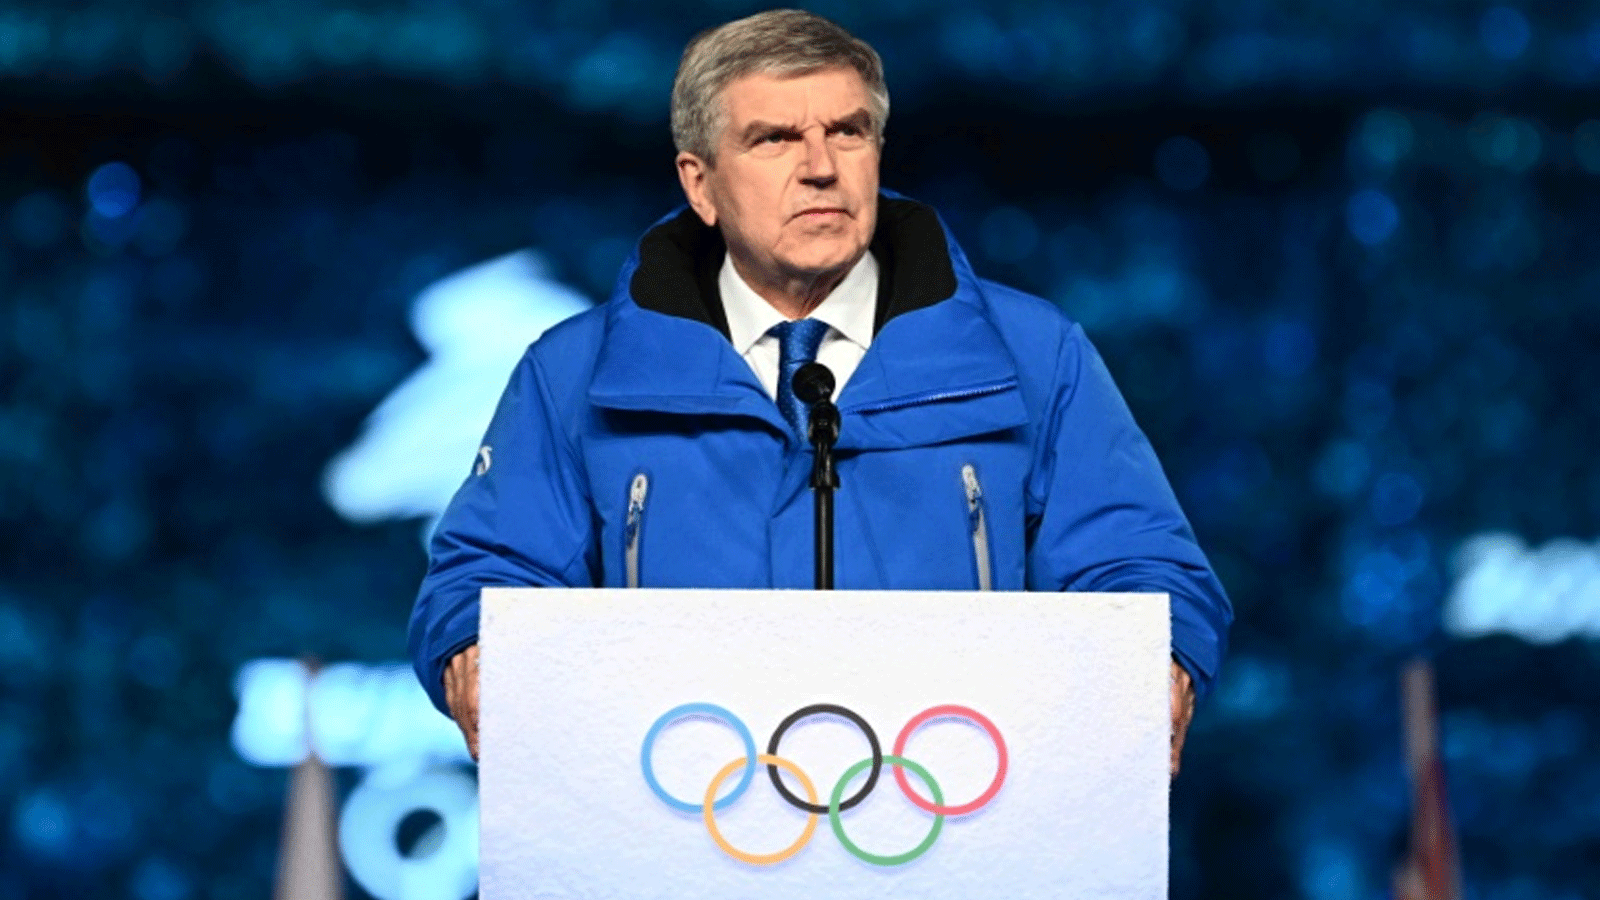 رئيس اللجنة الأولمبية الدولية توماس باخ يُجدد دعوته للسلام التي أطلقها في خطابه في حفلي الافتتاح والختام للألعاب الأولمبية الشتوية 2022 في بكين